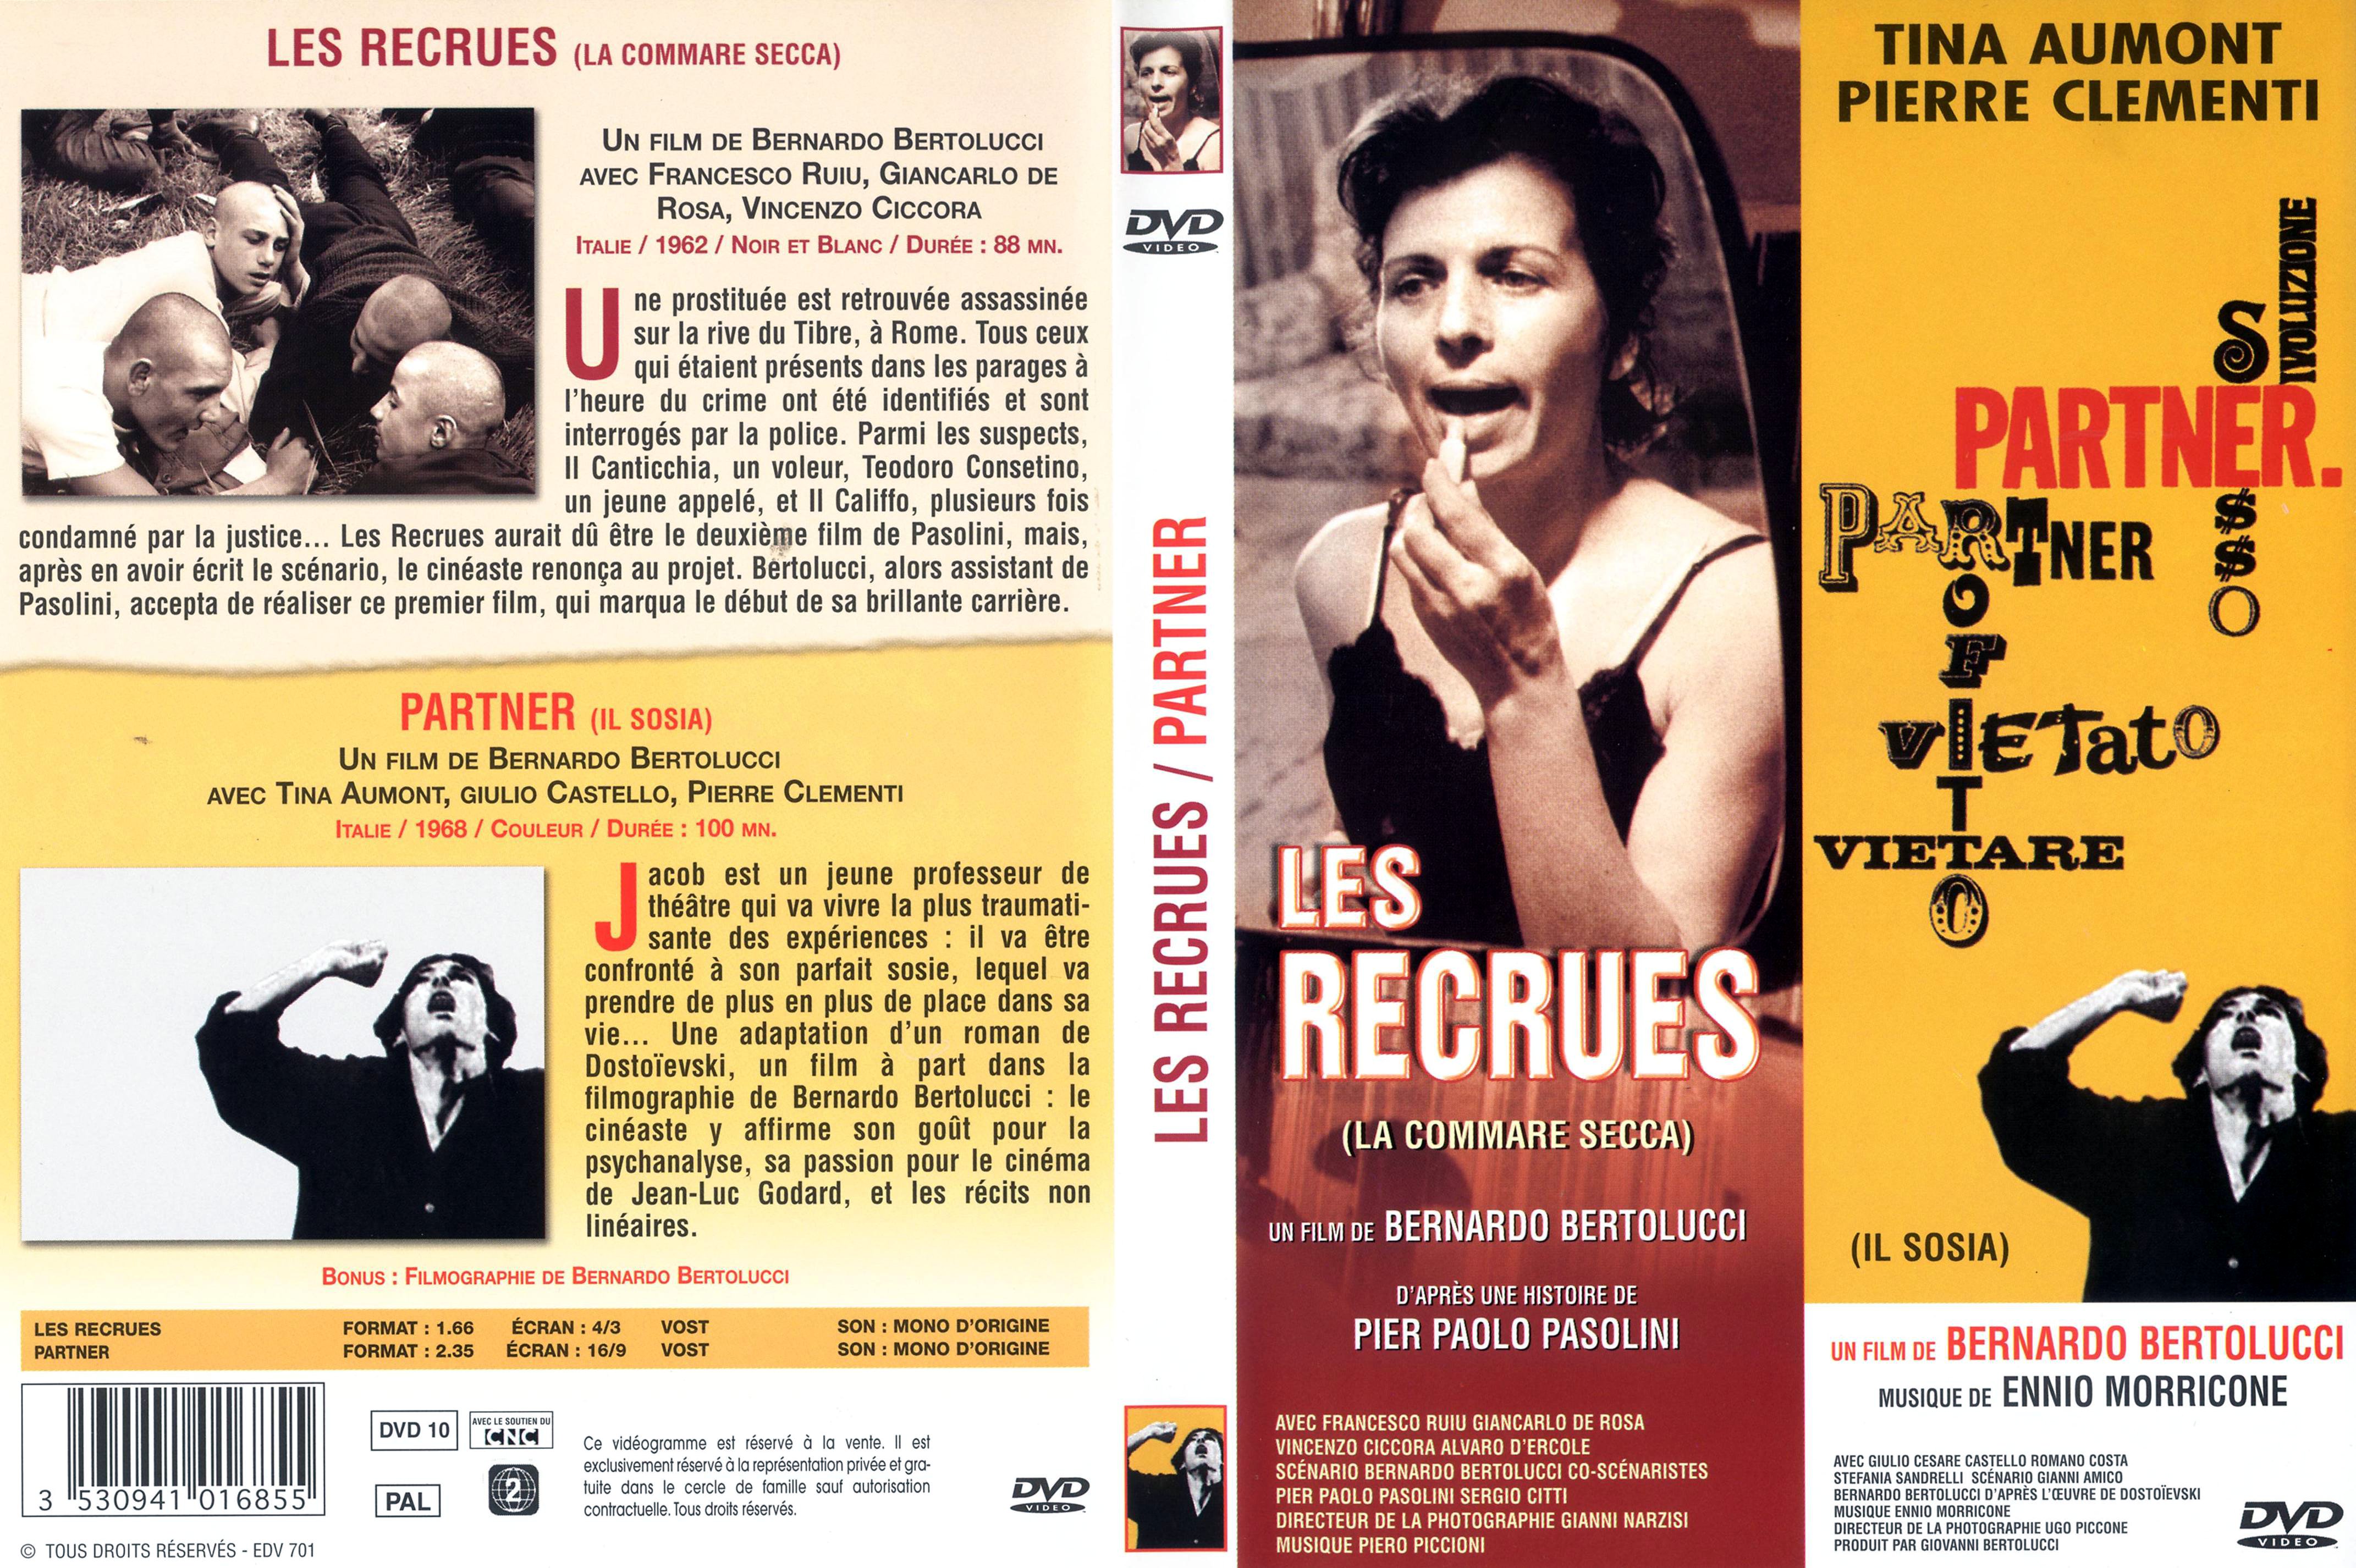 Jaquette DVD Les recrues + Partner